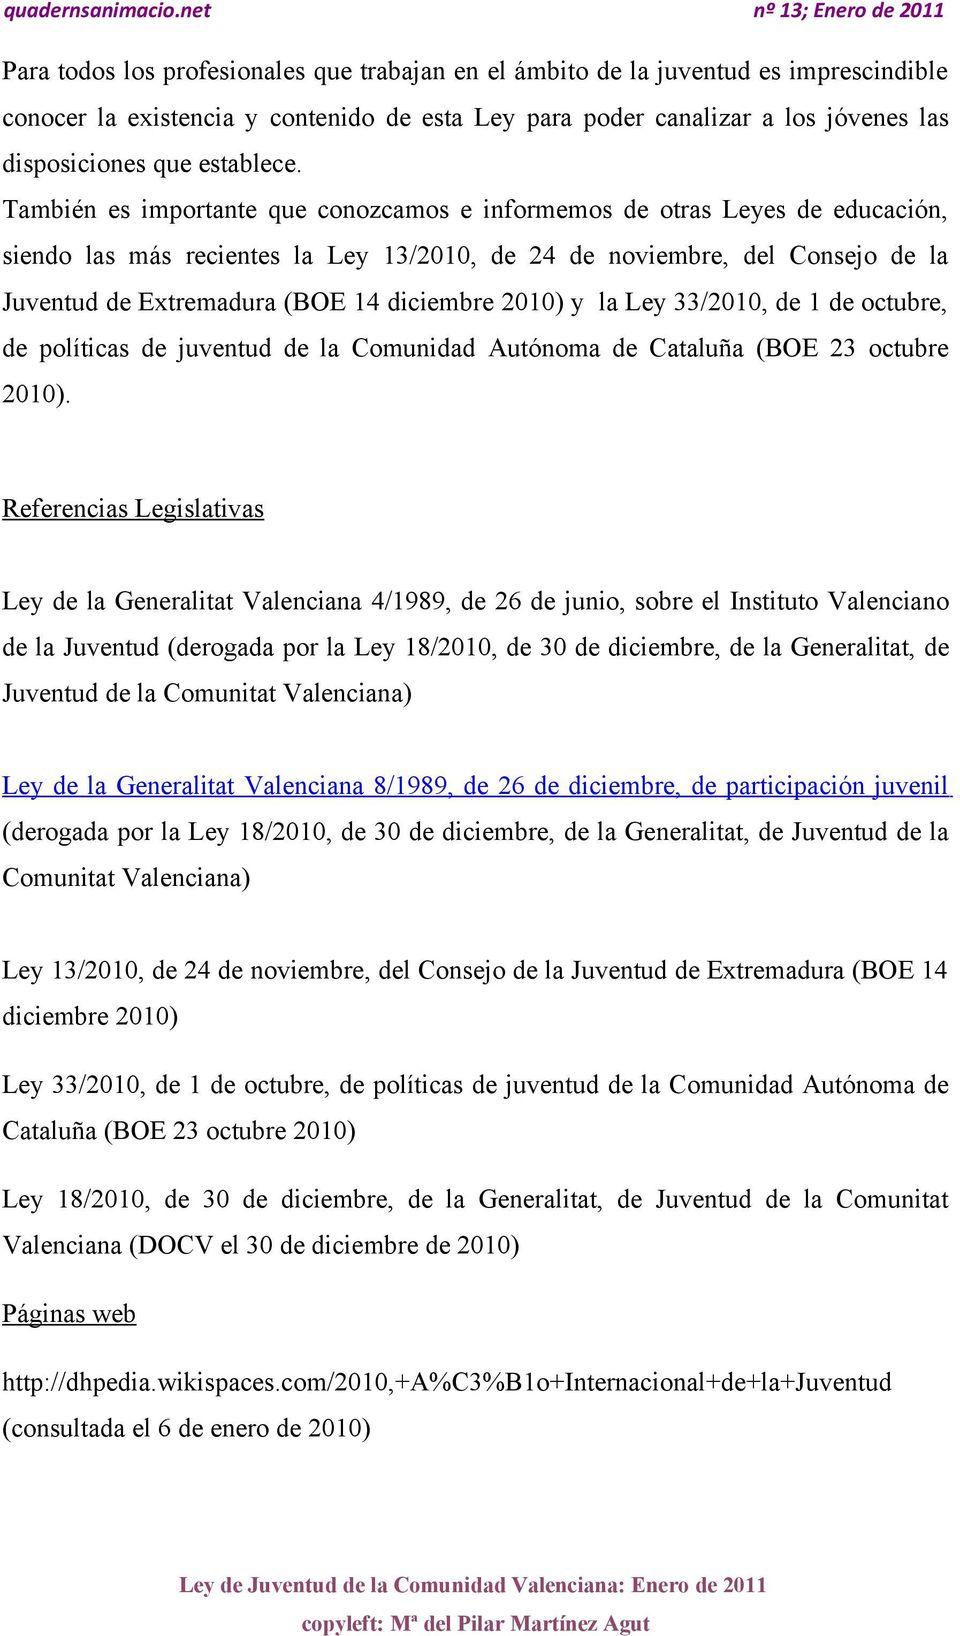 También es importante que conozcamos e informemos de otras Leyes de educación, siendo las más recientes la Ley 13/2010, de 24 de noviembre, del Consejo de la Juventud de Extremadura (BOE 14 diciembre